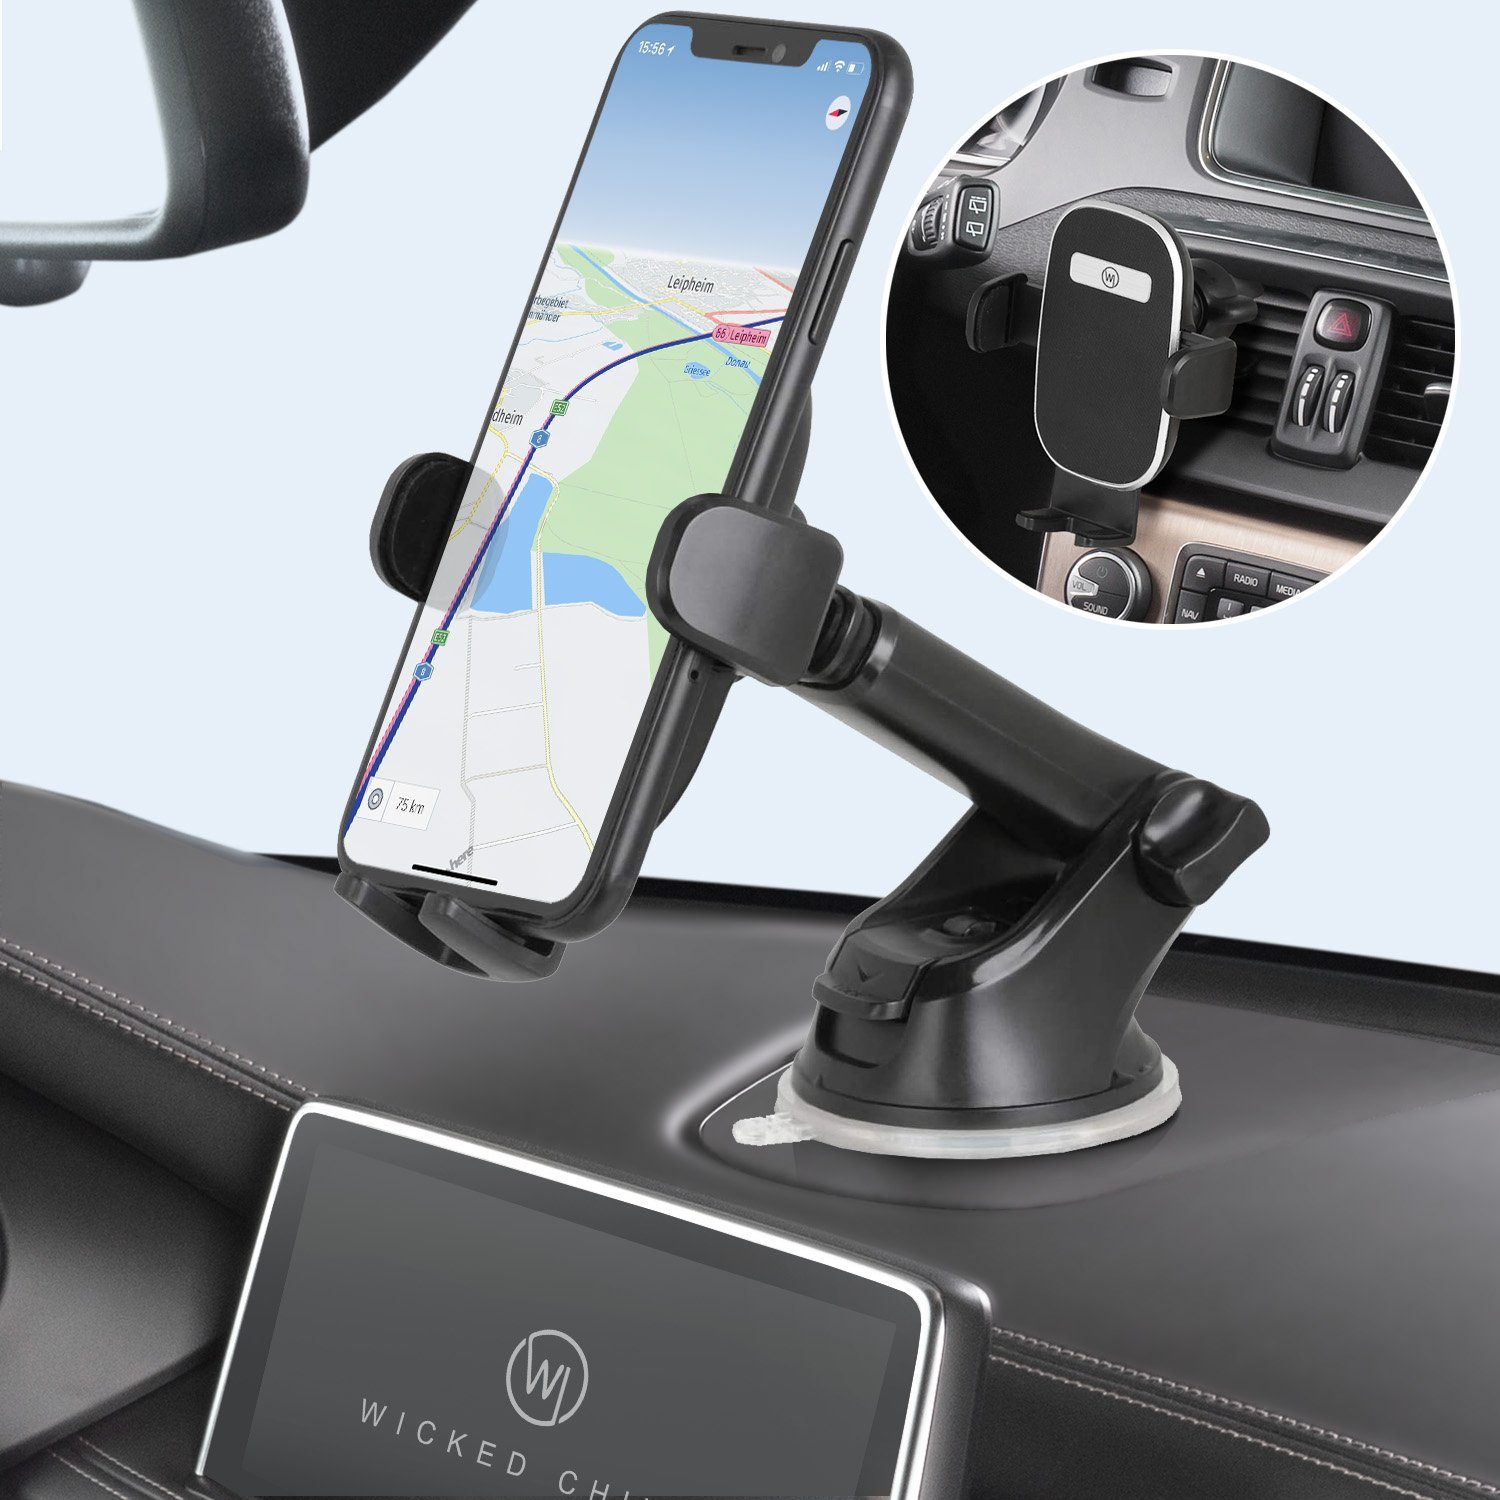 WICKED CHILI KFZ Autohalterung mit Ladefunktion für iPhone 15, 14, 13, 12  MagSafe Ladegerät Auto Handyhalterung KFZ Handy Halterung, schwarz